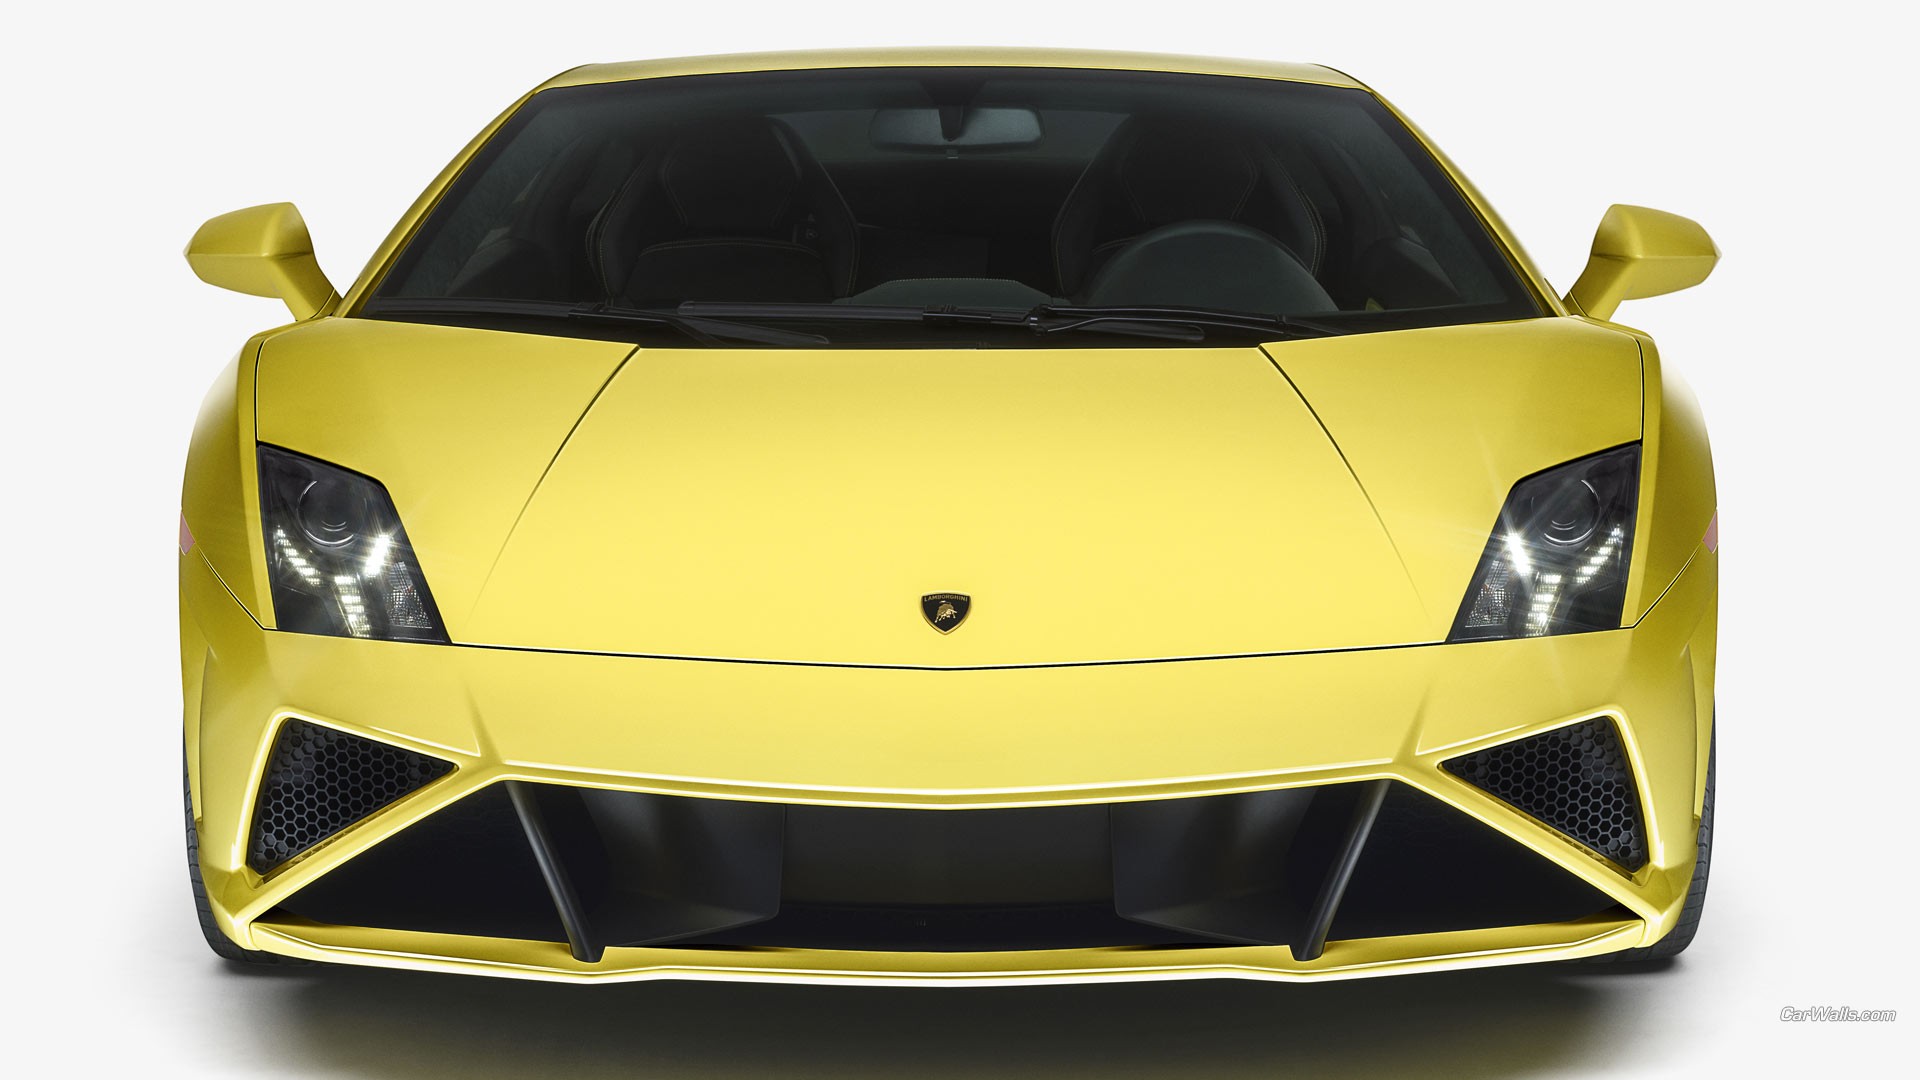 Lamborghini Murcielago in yellow.